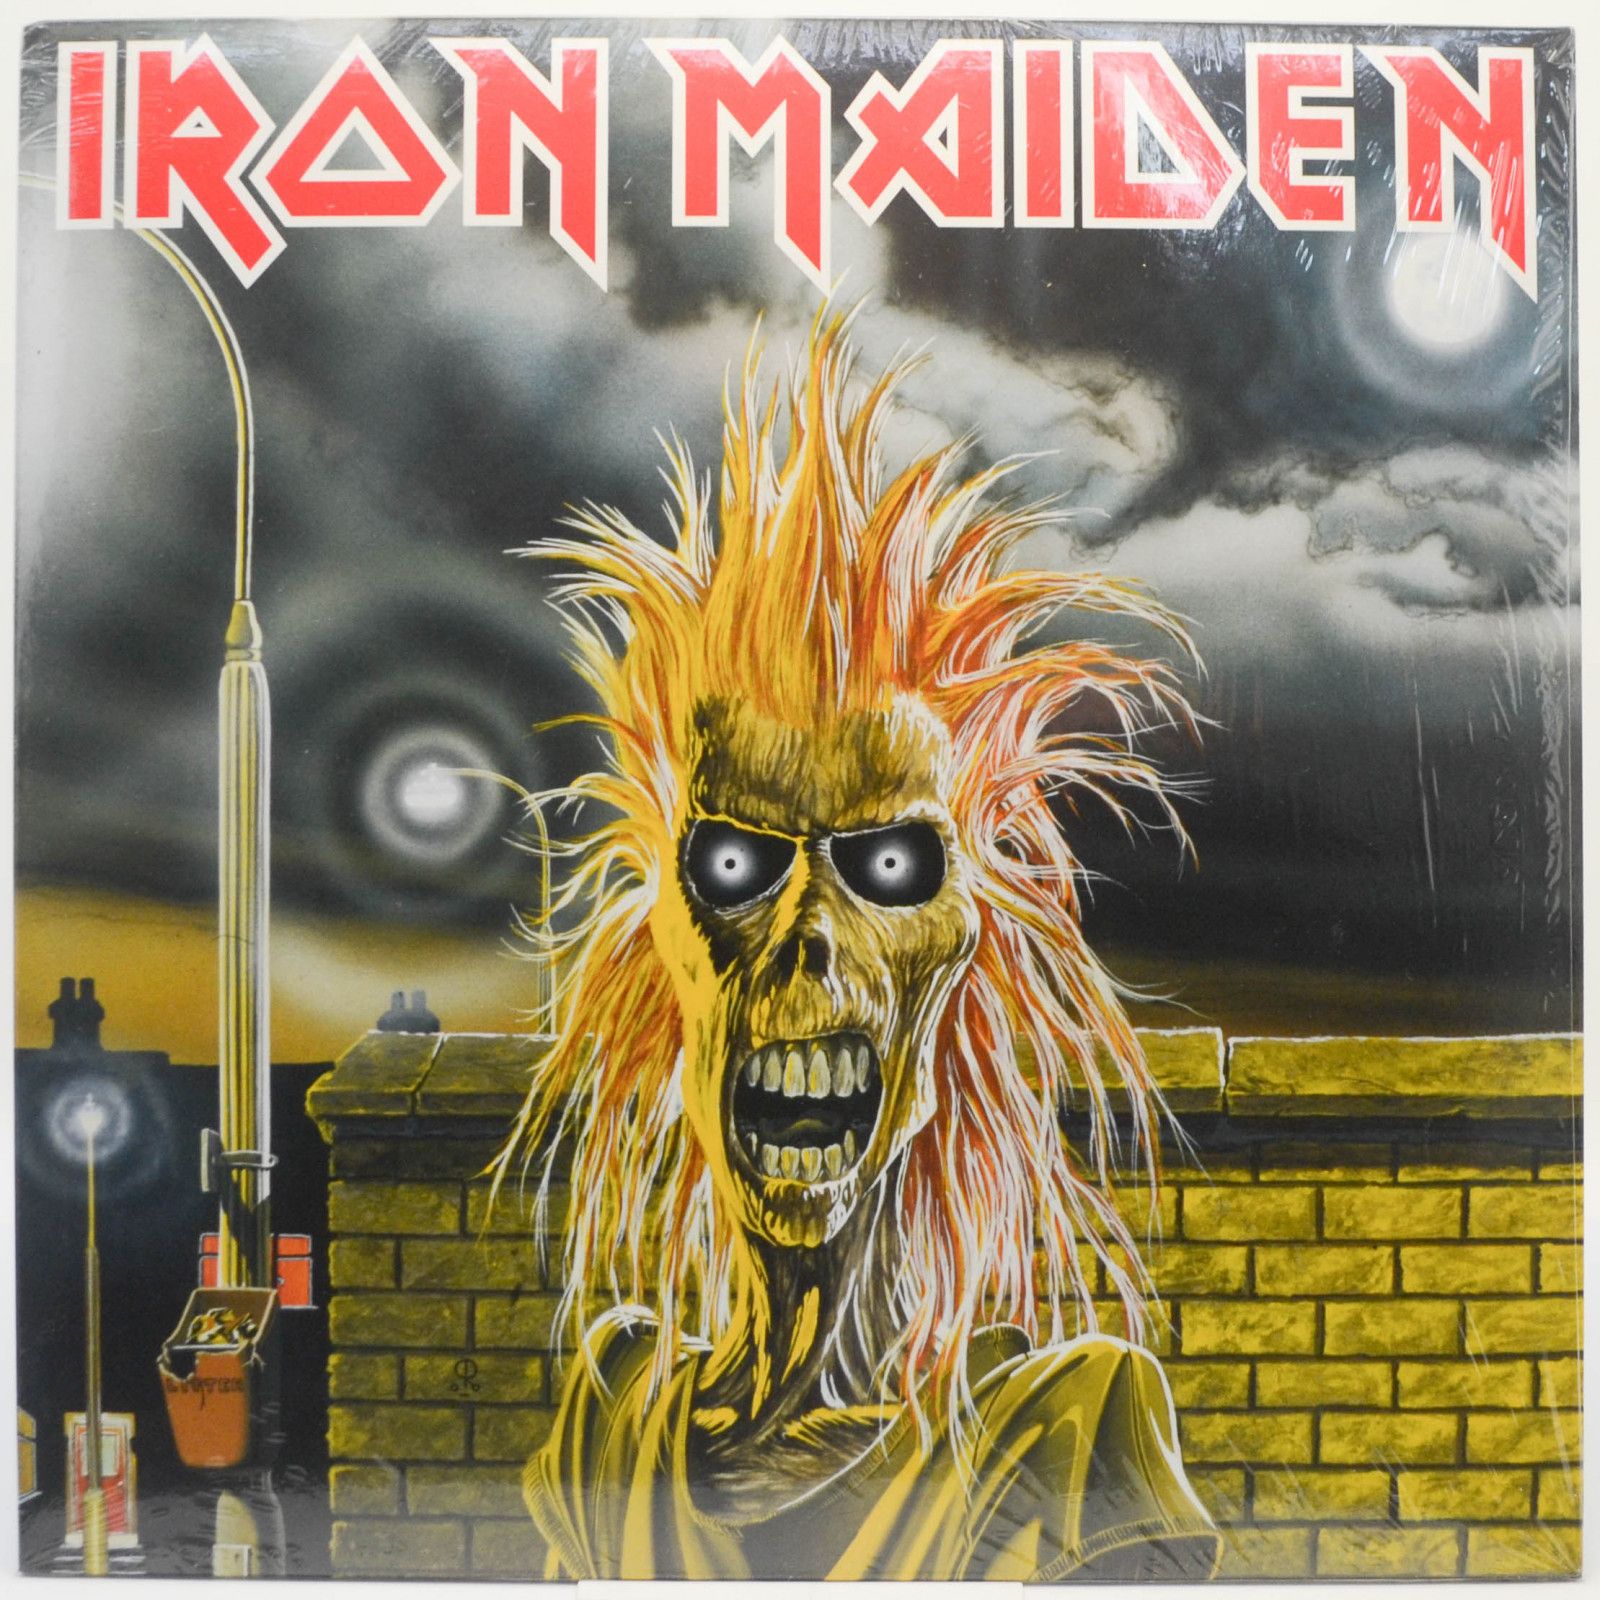 Iron Maiden — Iron Maiden, 1980